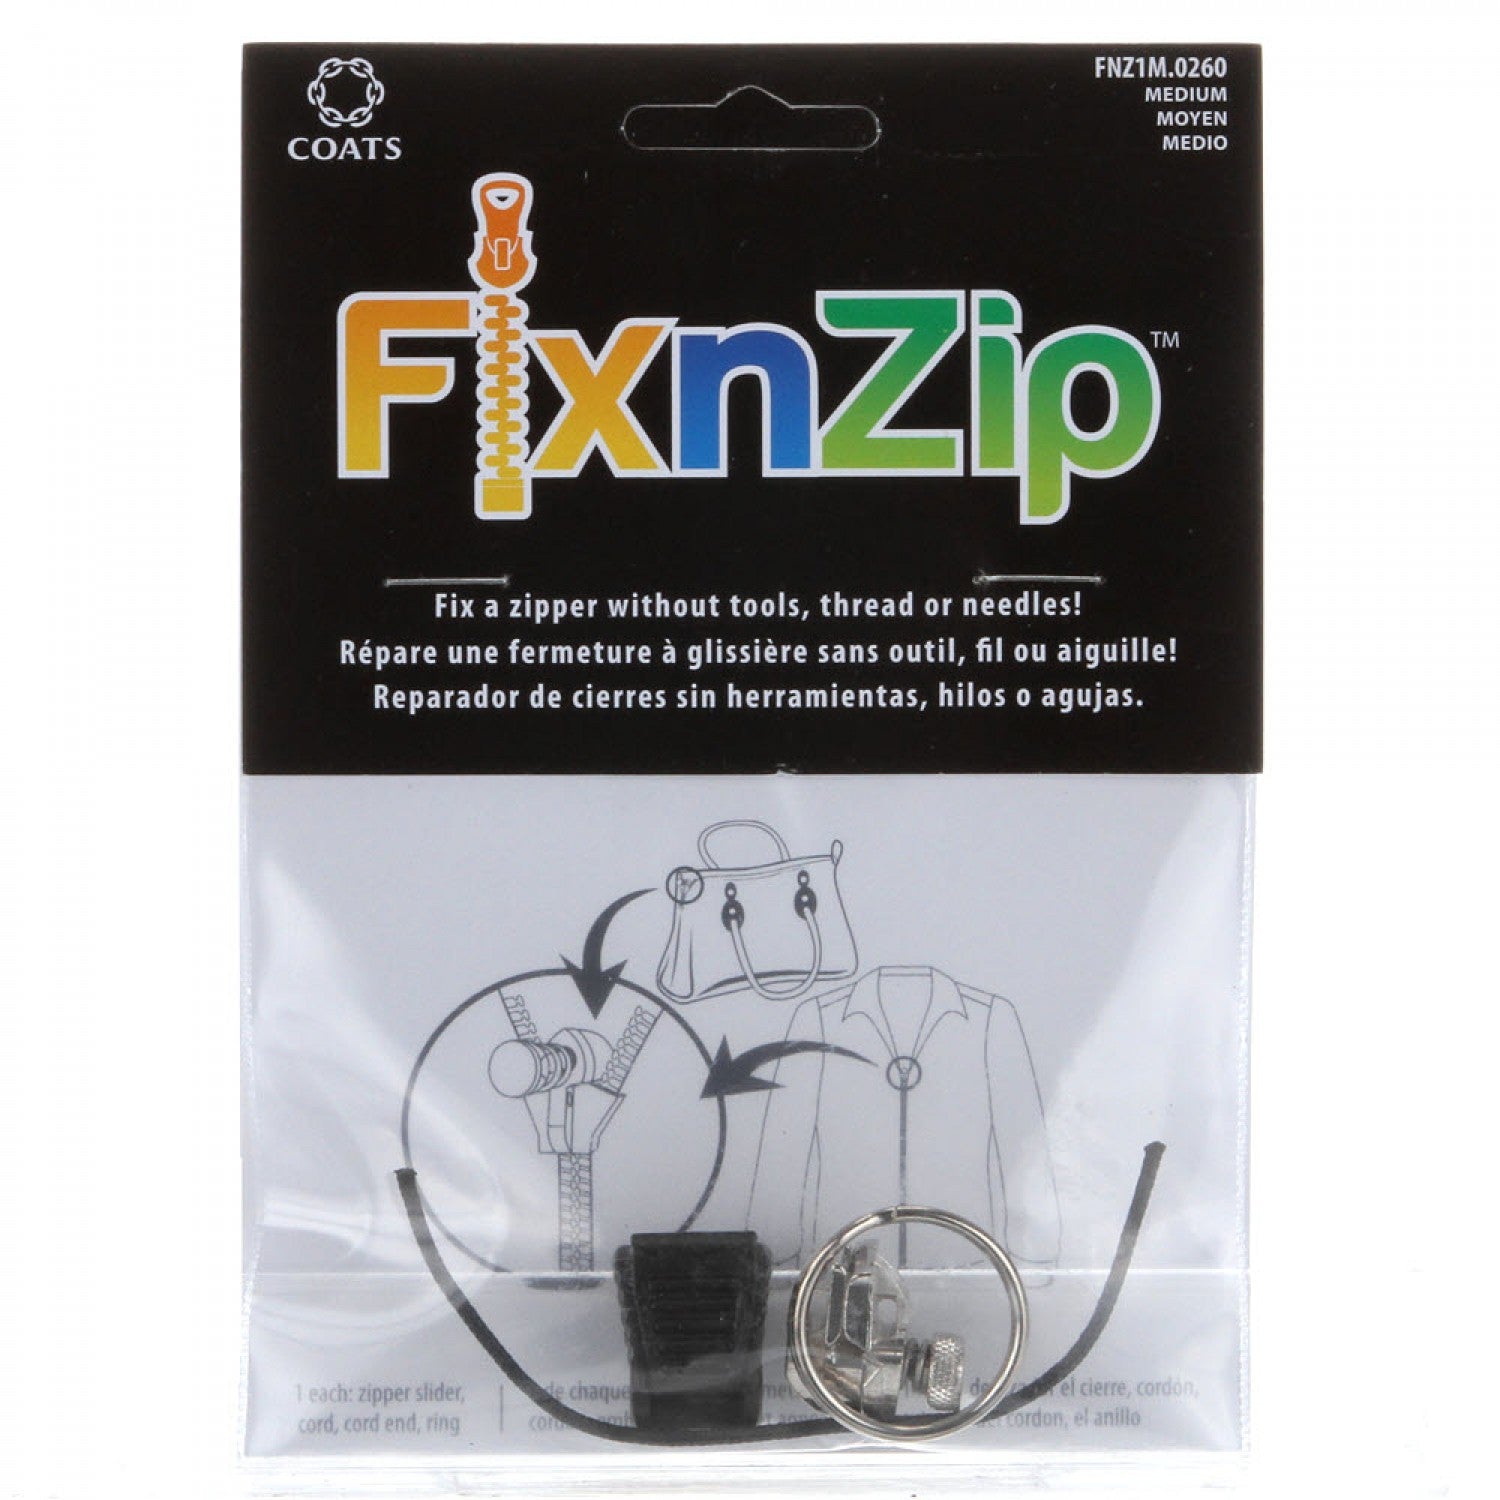 Fix-n-zip Replacement Zipper Slider Repair Medium